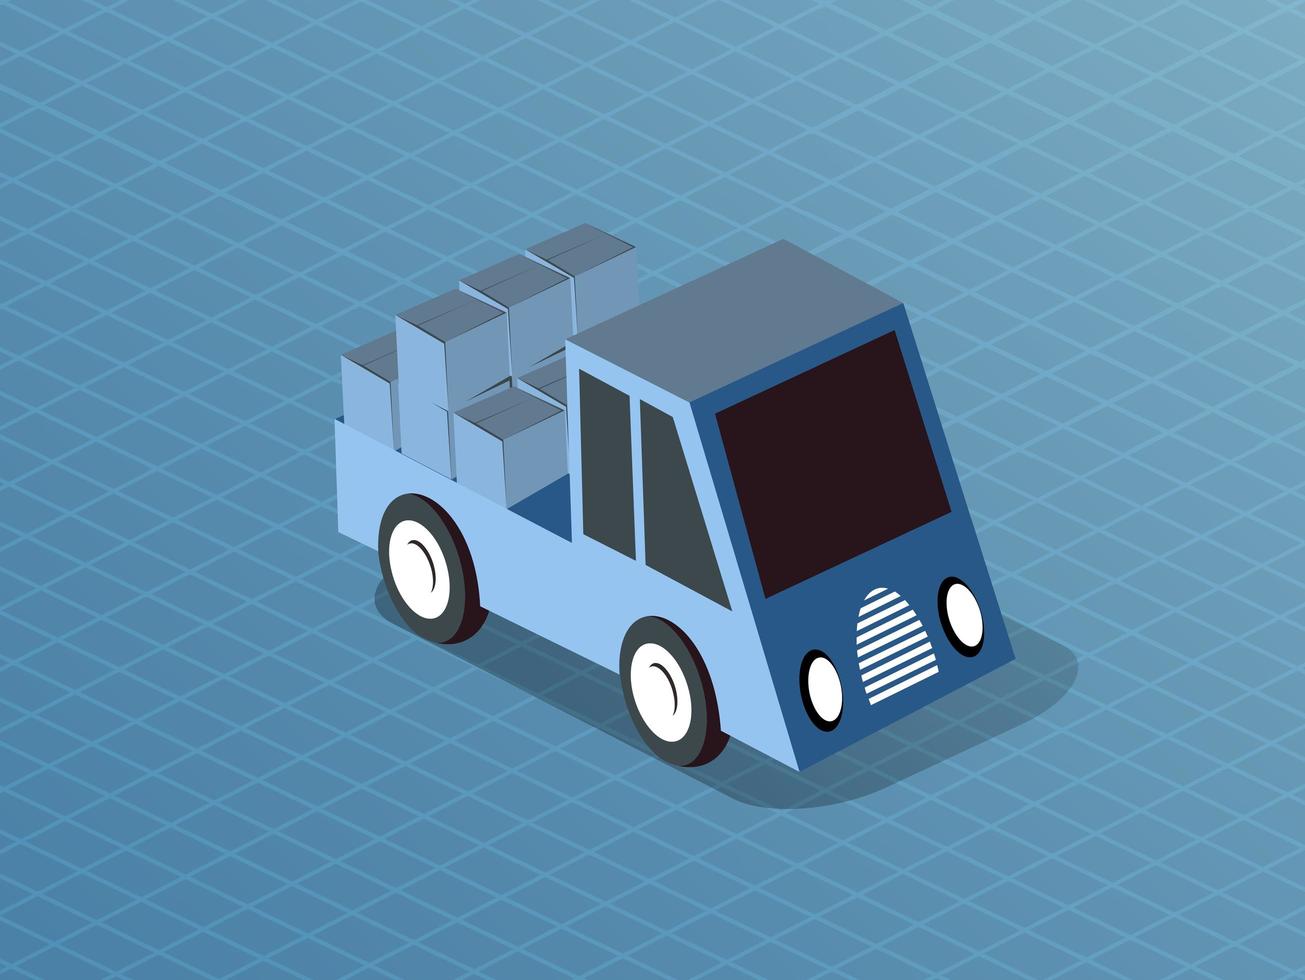 isométrique des véhicules à moteur voiture camion transport urbain vecteur